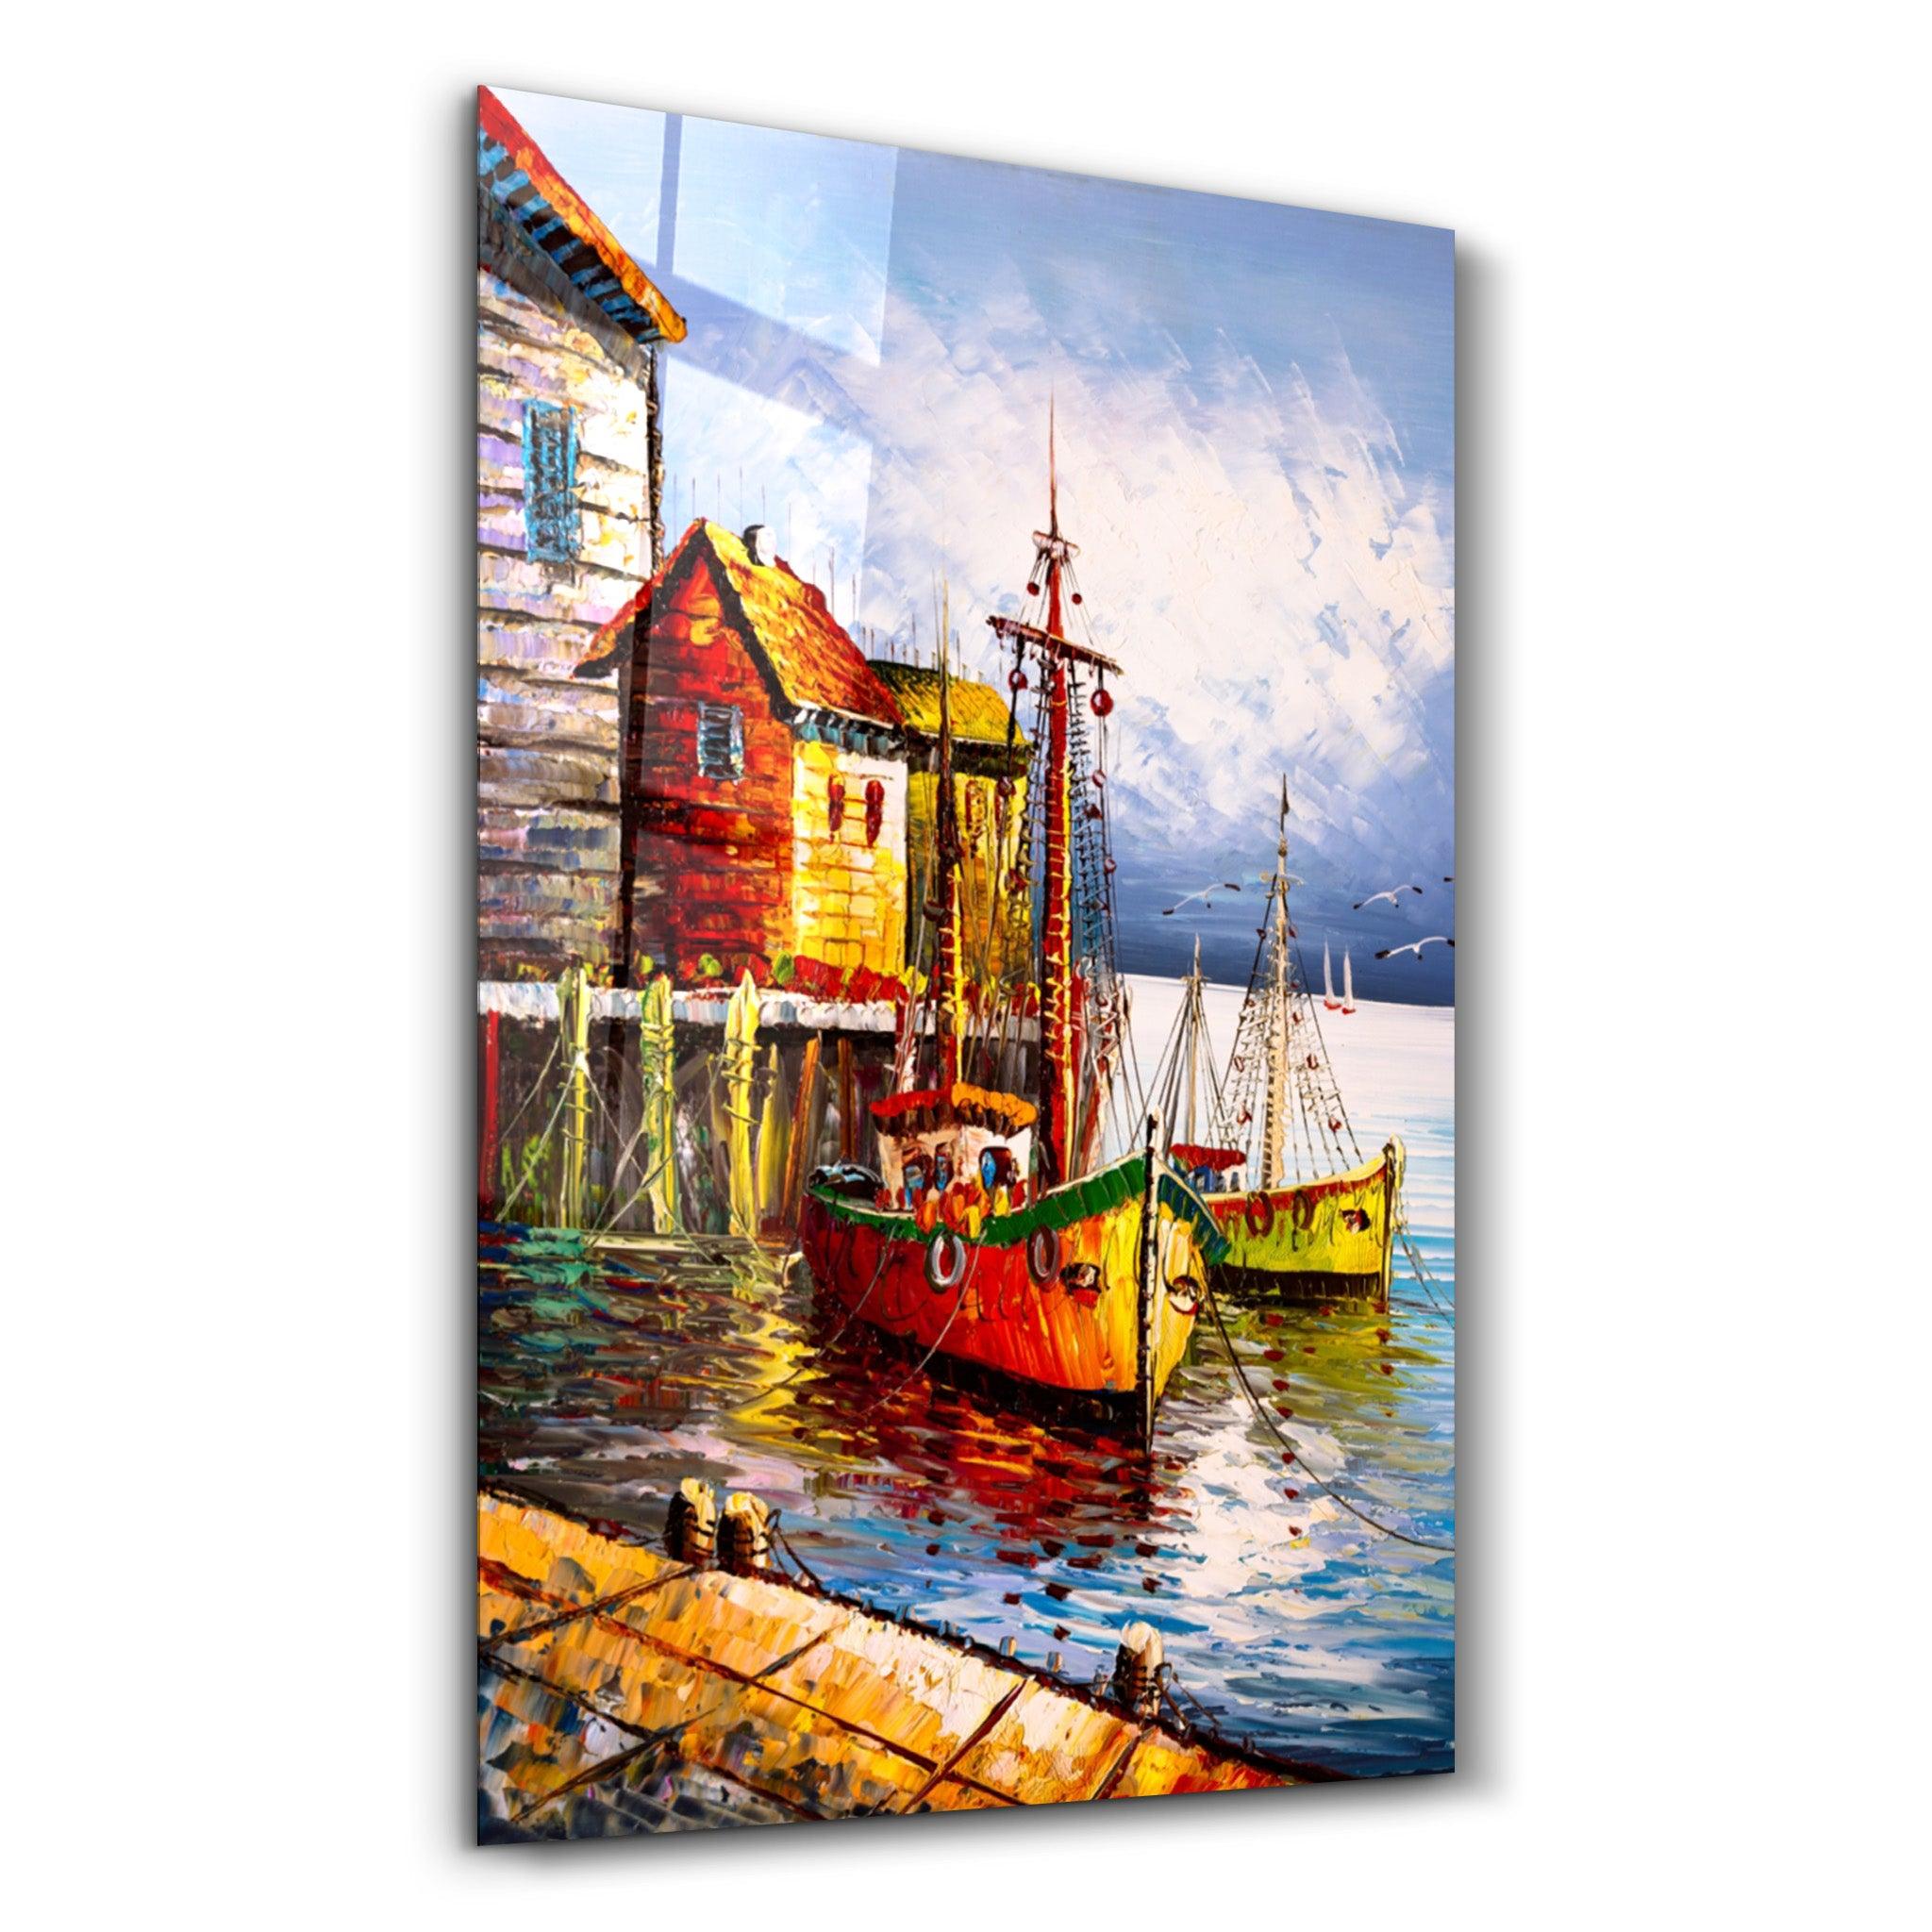 Boats and Houses | Glass Wall Art - ArtDesigna Glass Printing Wall Art